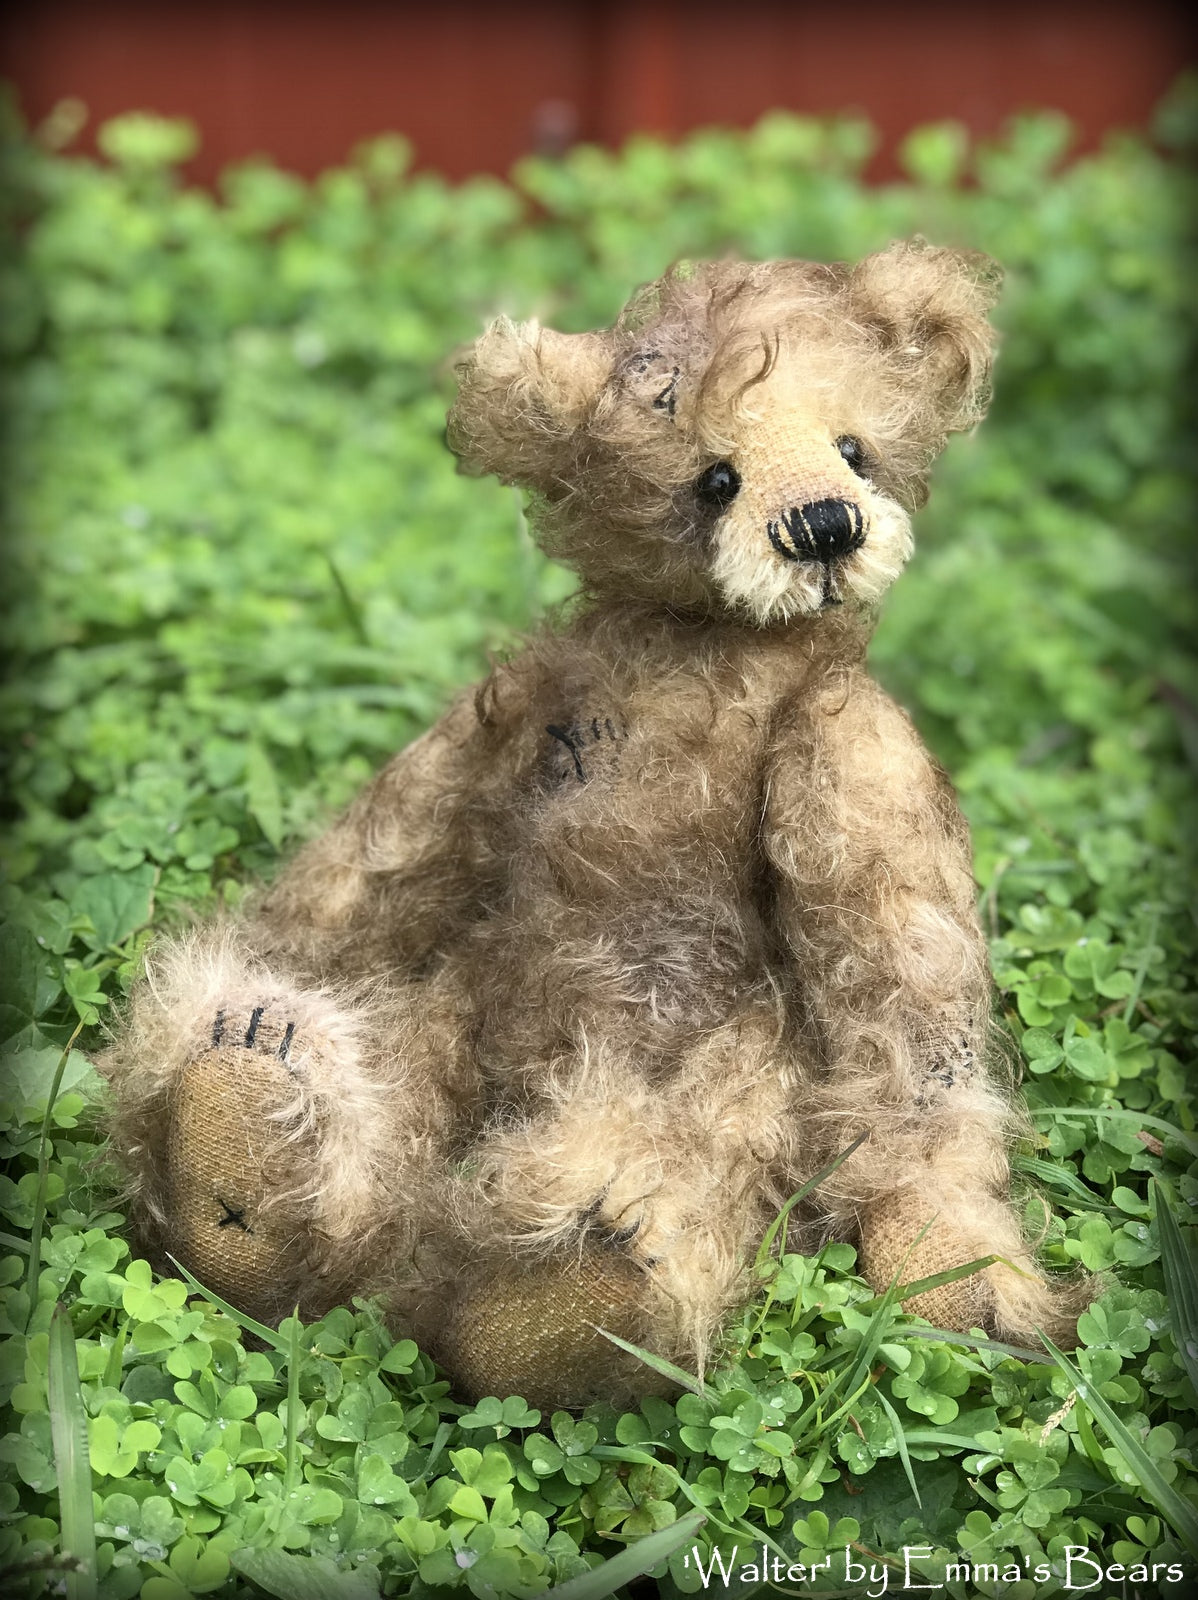 Walter - 10" Mohair Artist Bear by Emma's Bears - OOAK